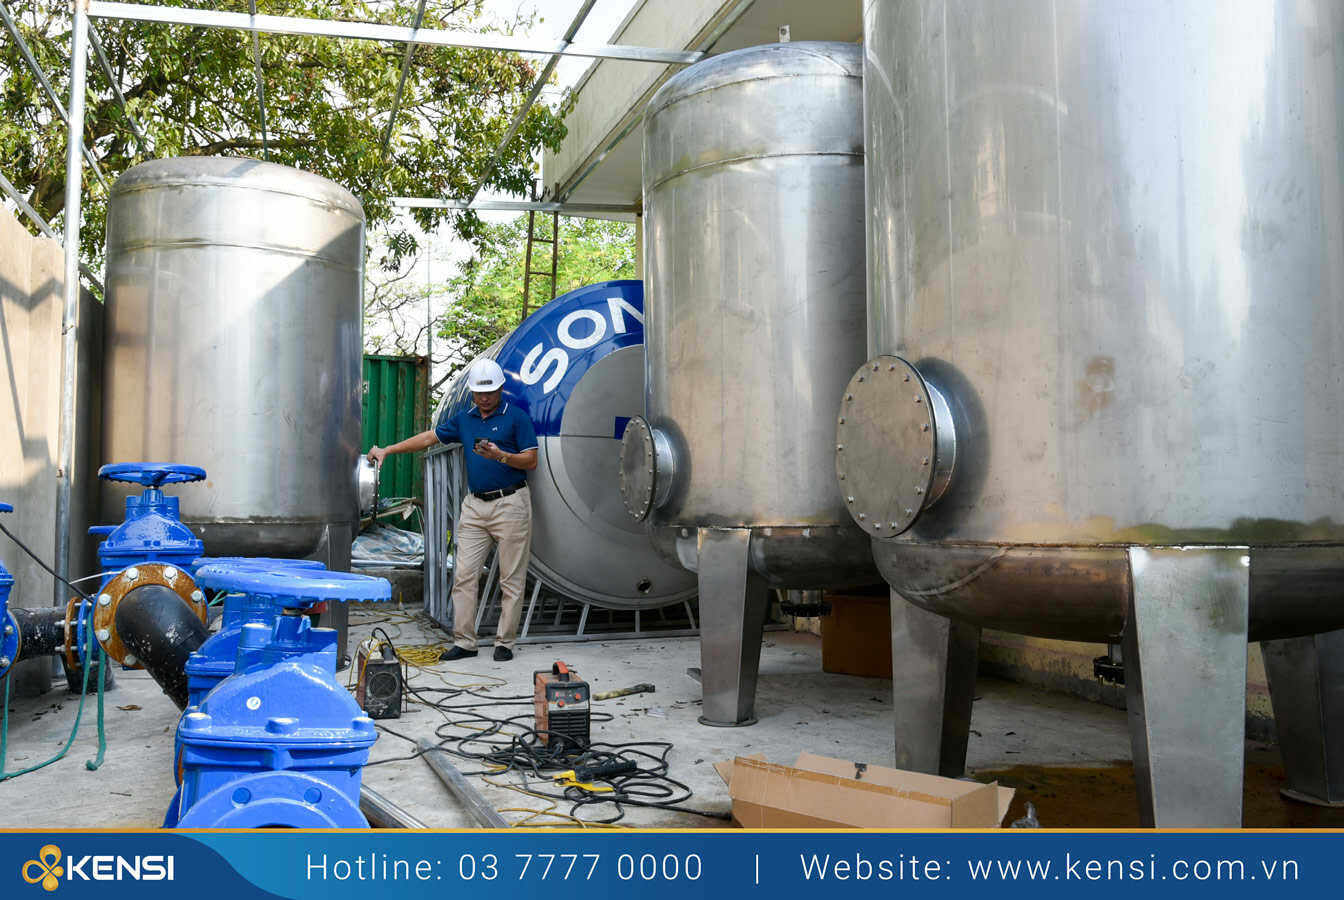 Tekcom cung cấp, lắp đặt thiết bị lọc nước cho nhà xưởng